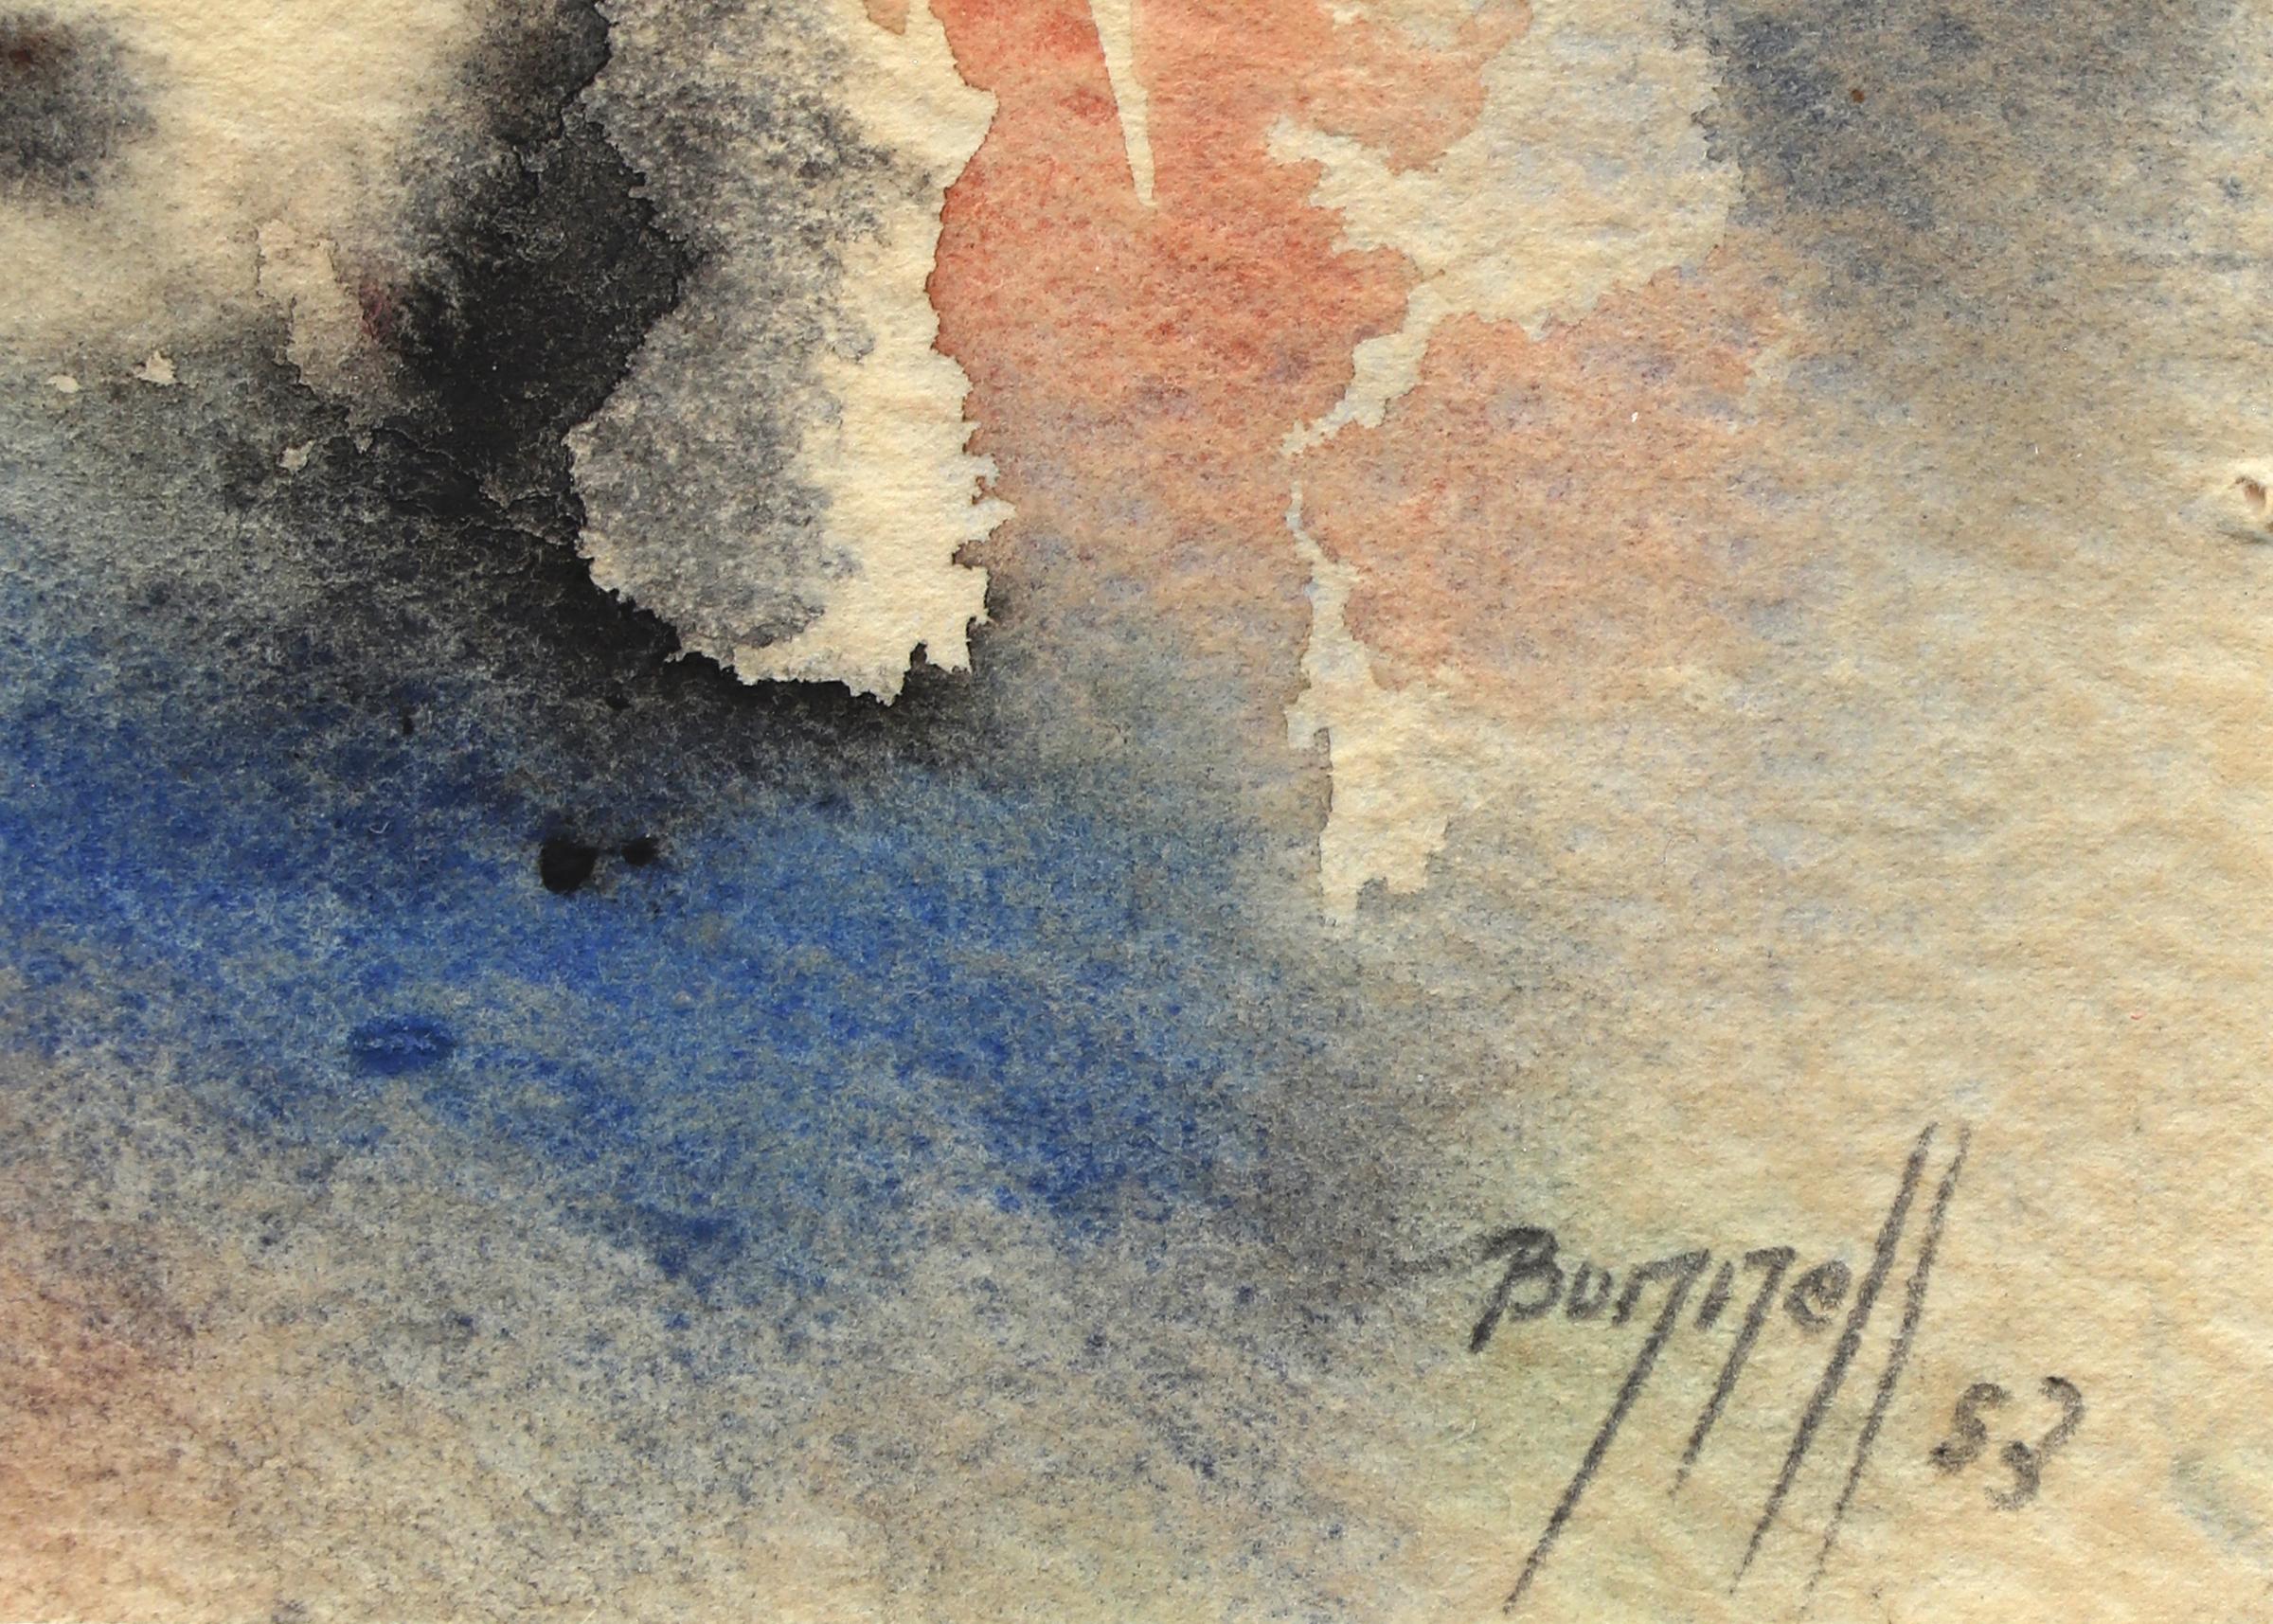 Abstrakt-expressionistische Aquarellkomposition von Charles Bunnell aus den 1950er Jahren (Abstrakter Expressionismus), Art, von Charles Ragland Bunnell